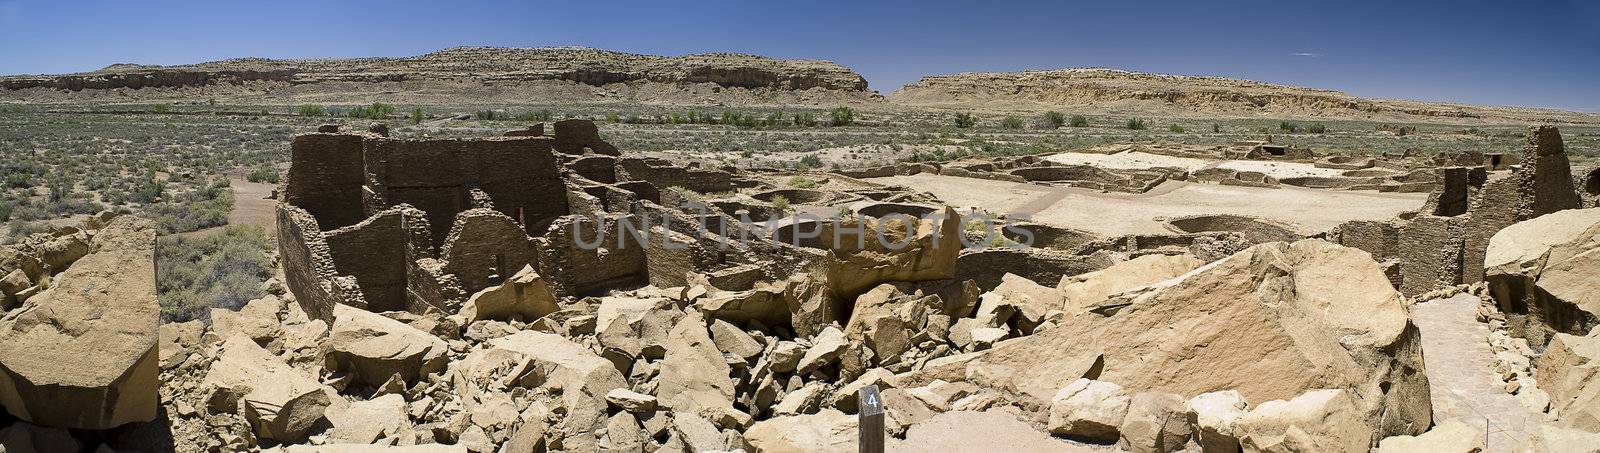 Panorama of Ancient Ruins at Chaco Canyon, New Mexico